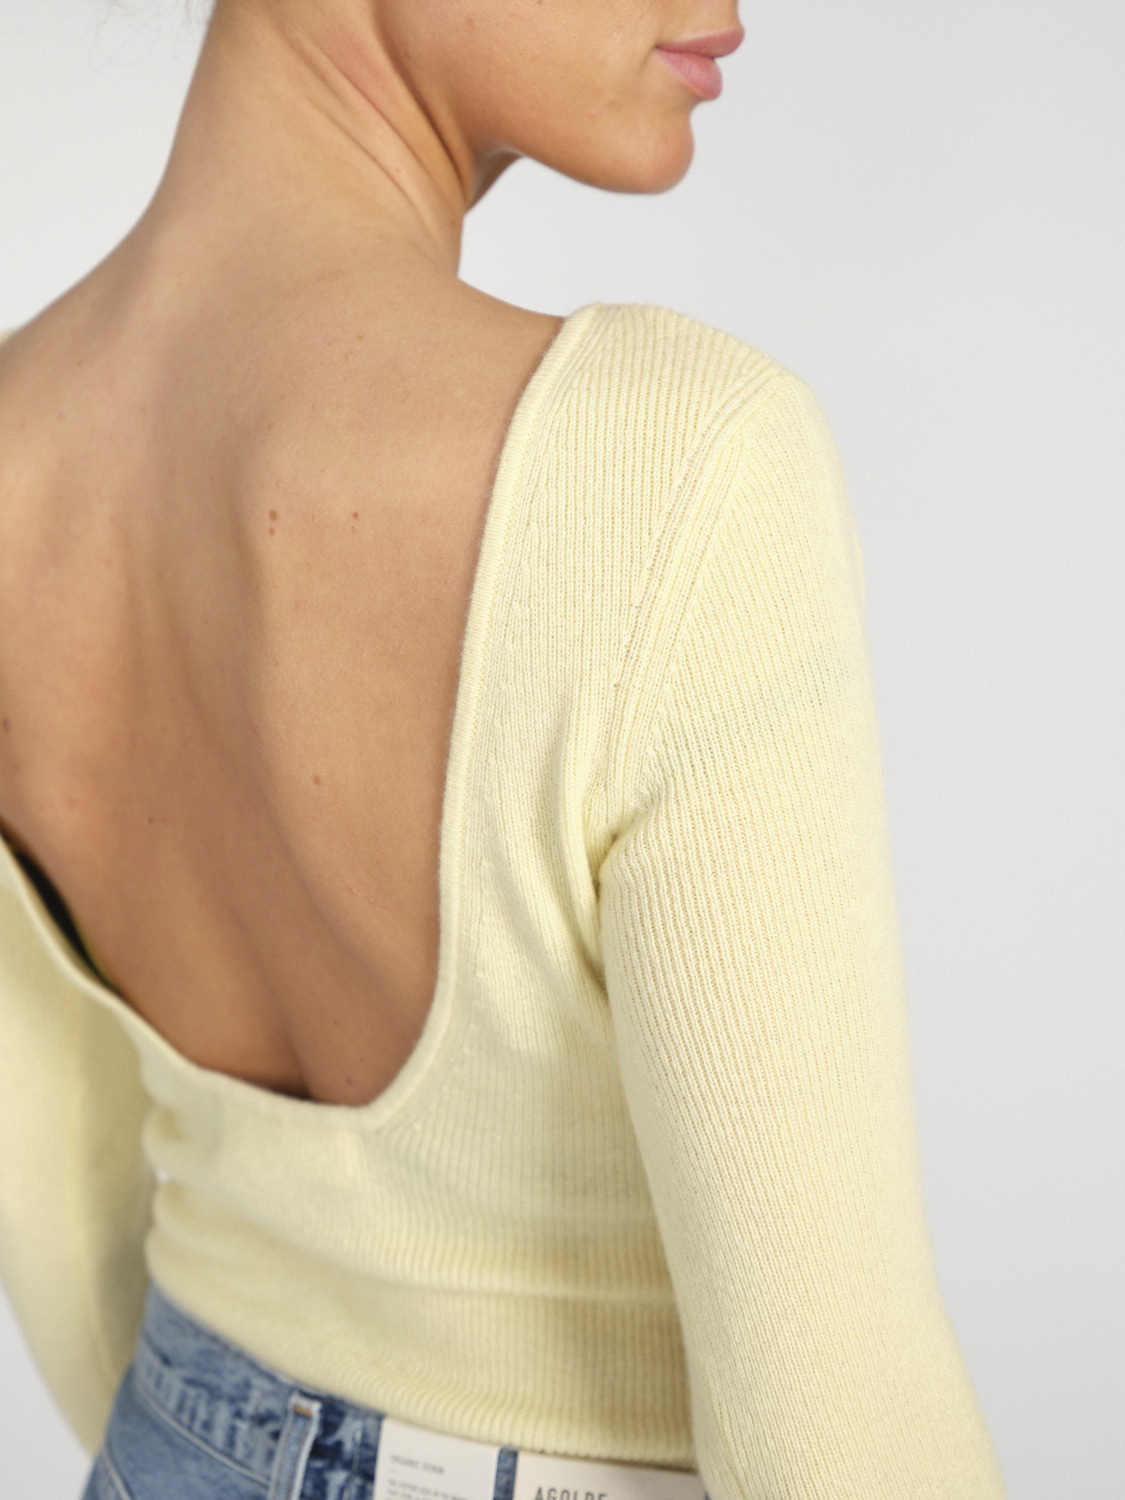 Lisa Yang Juliette – Pullover aus Cashmere mit großem Rückenausschnitt  gelb XS/S